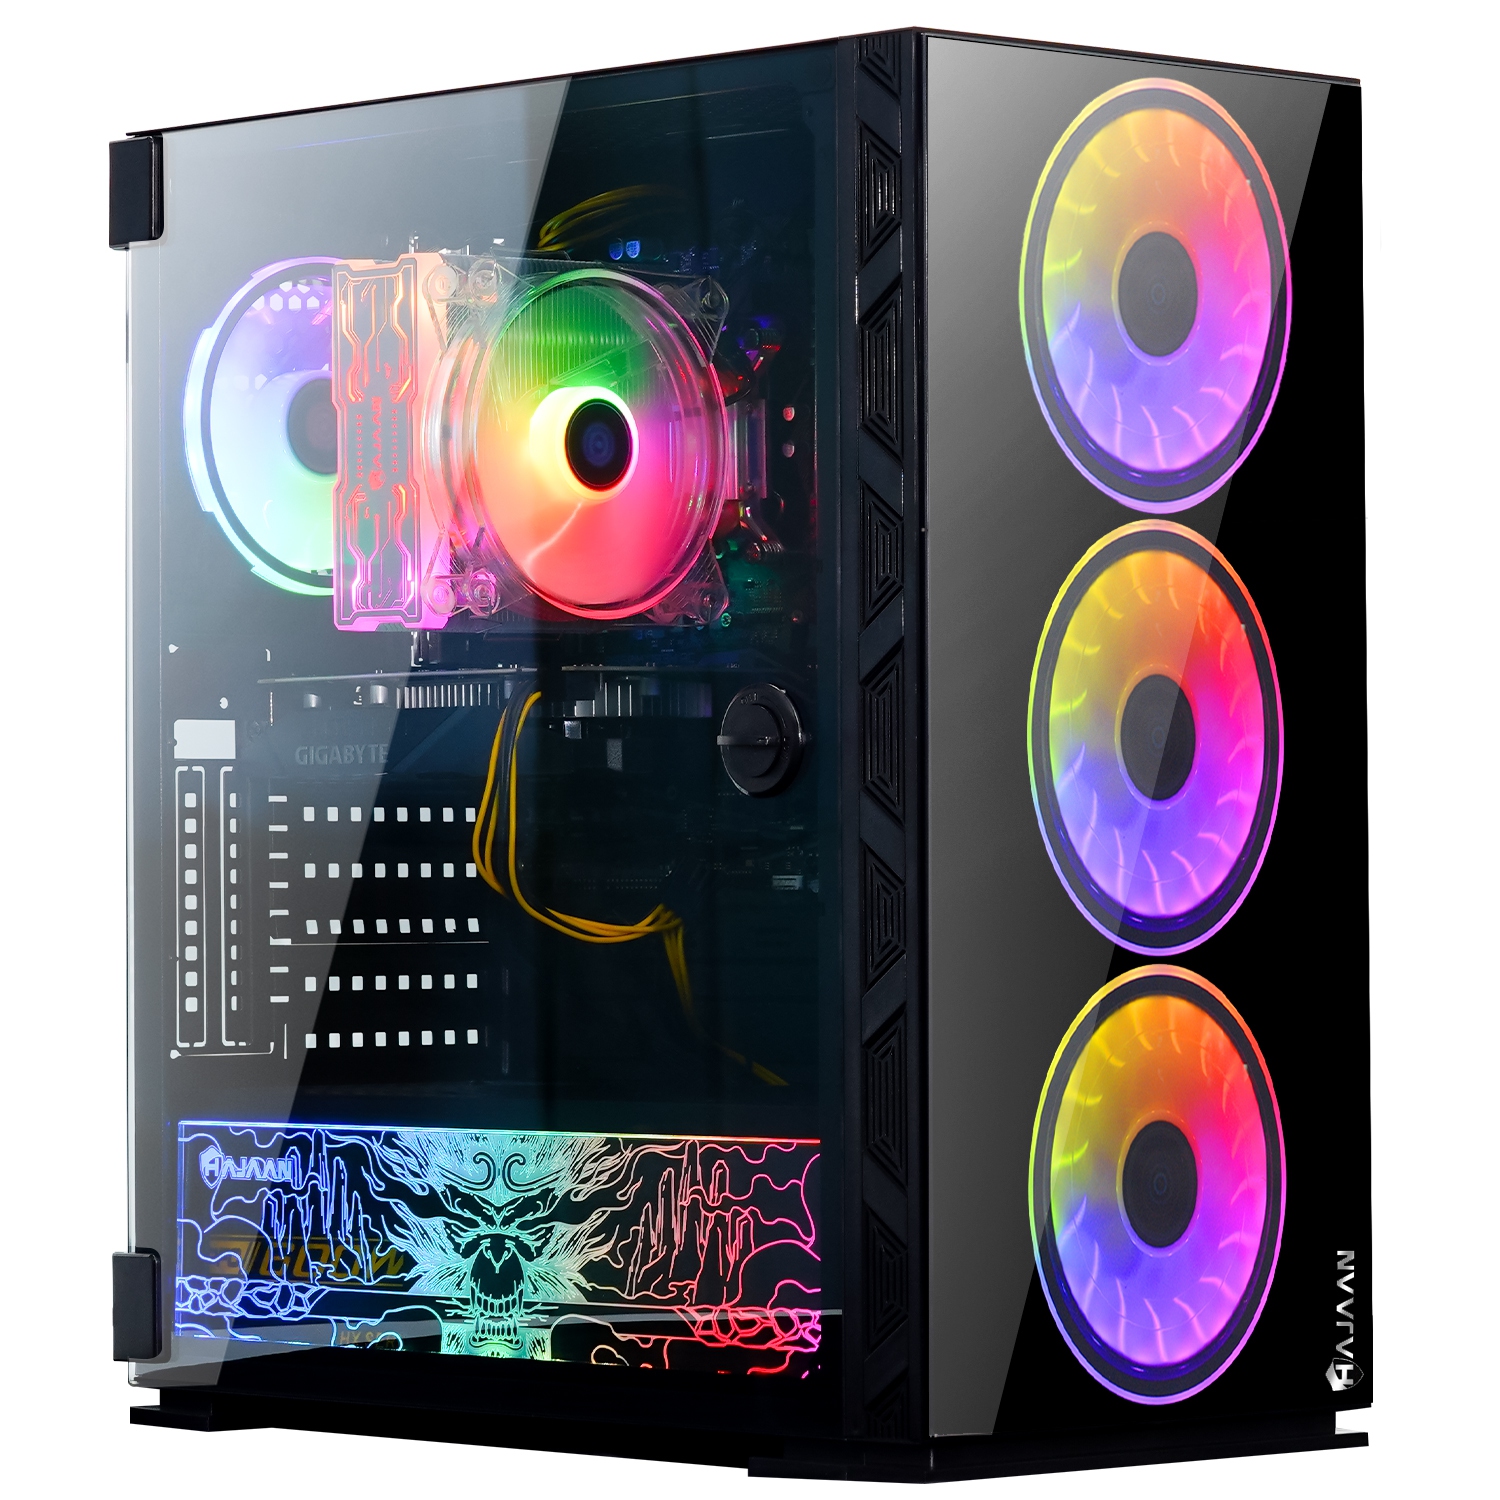 HAJAAN BREEZE PRO Gaming Desktop PC | RTX 3050 8GB GDDR6 | AMD Ryzen 7 5800X 8-Core Processor | 16GB DDR4 RAM | 512GB SSD | Windows 11 Pro | Black